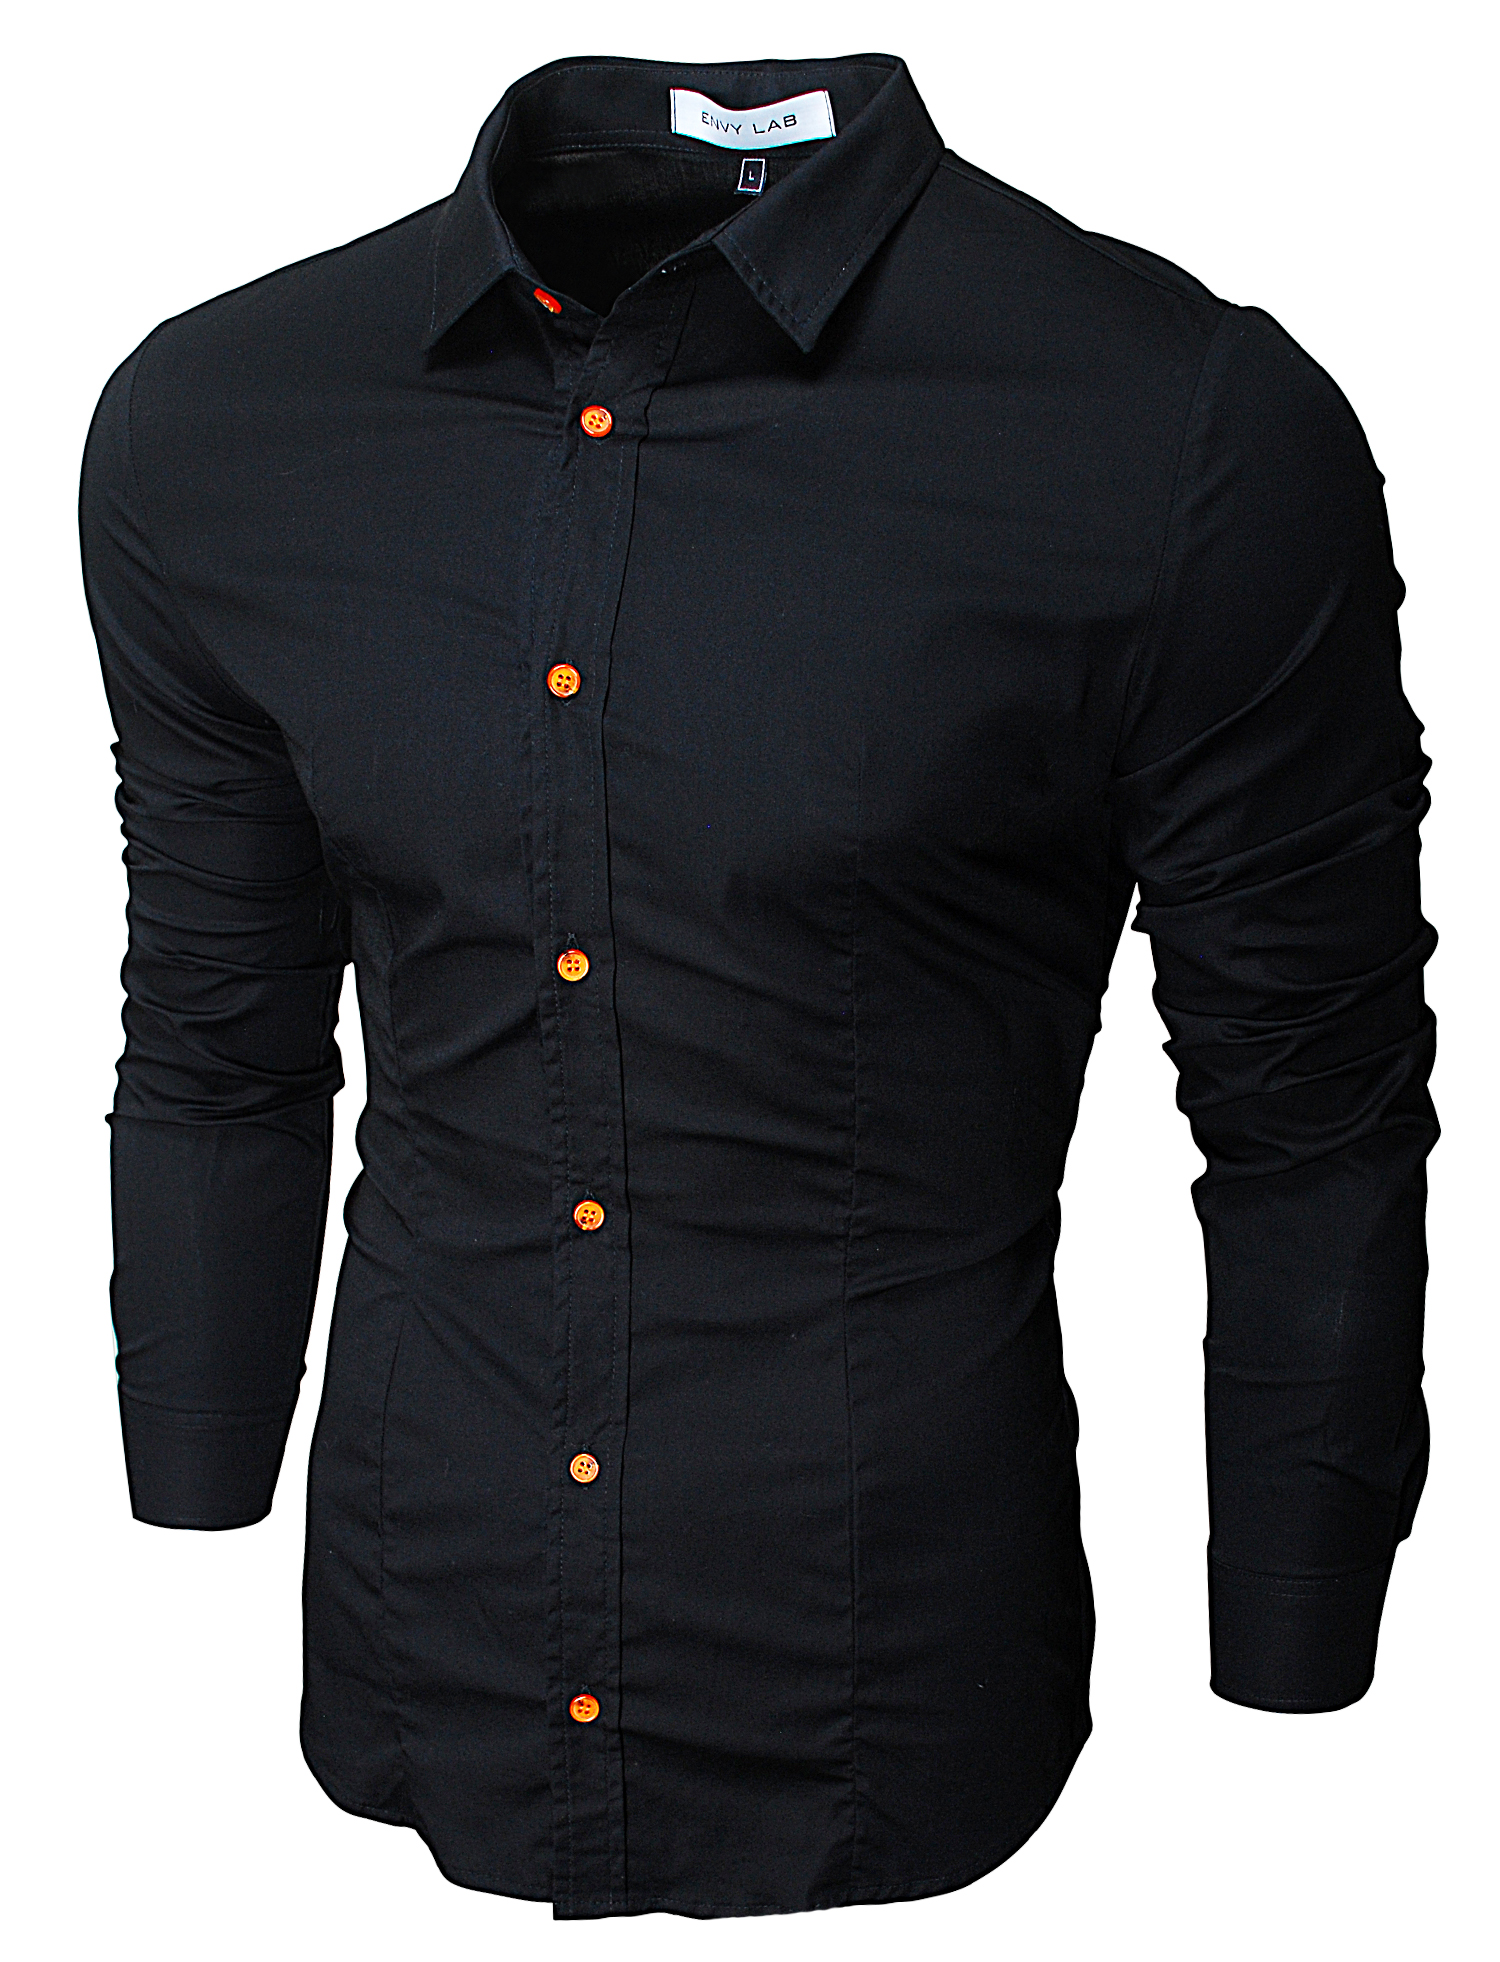 картинка товара рубашка raw black orange в магазине Envy LAB